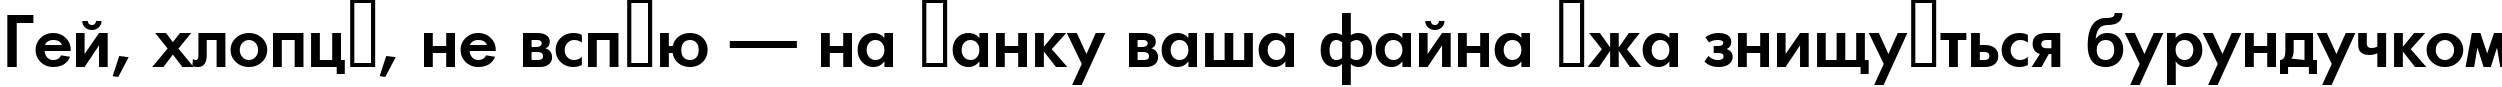 Пример написания шрифтом a_FuturicaLt SemiBold текста на украинском